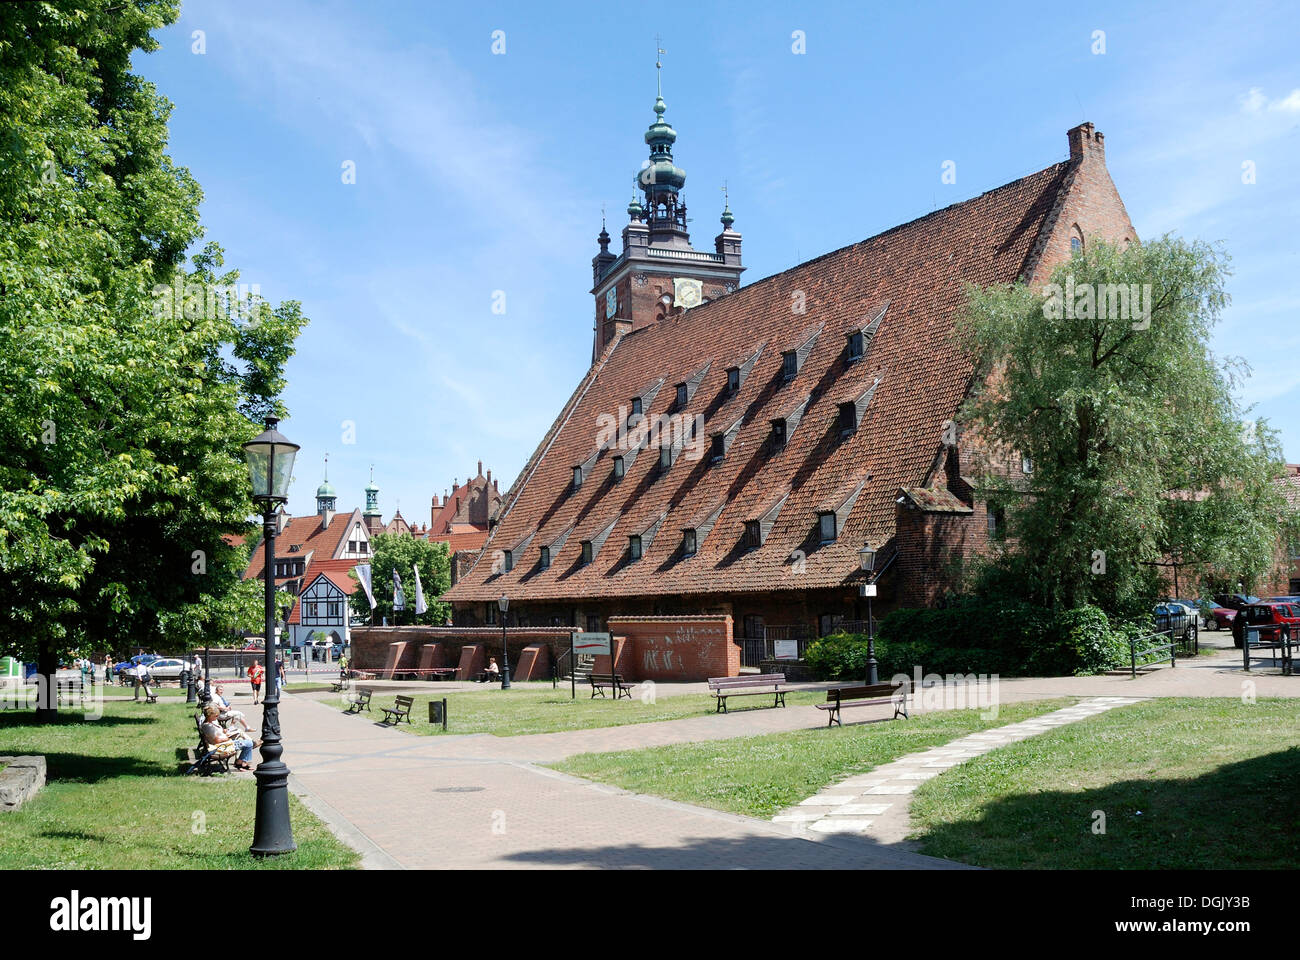 Große Mühle mit dem Turm von St. Catherine Church of Gdansk im Hintergrund - Wielk Mlyn. Stockfoto